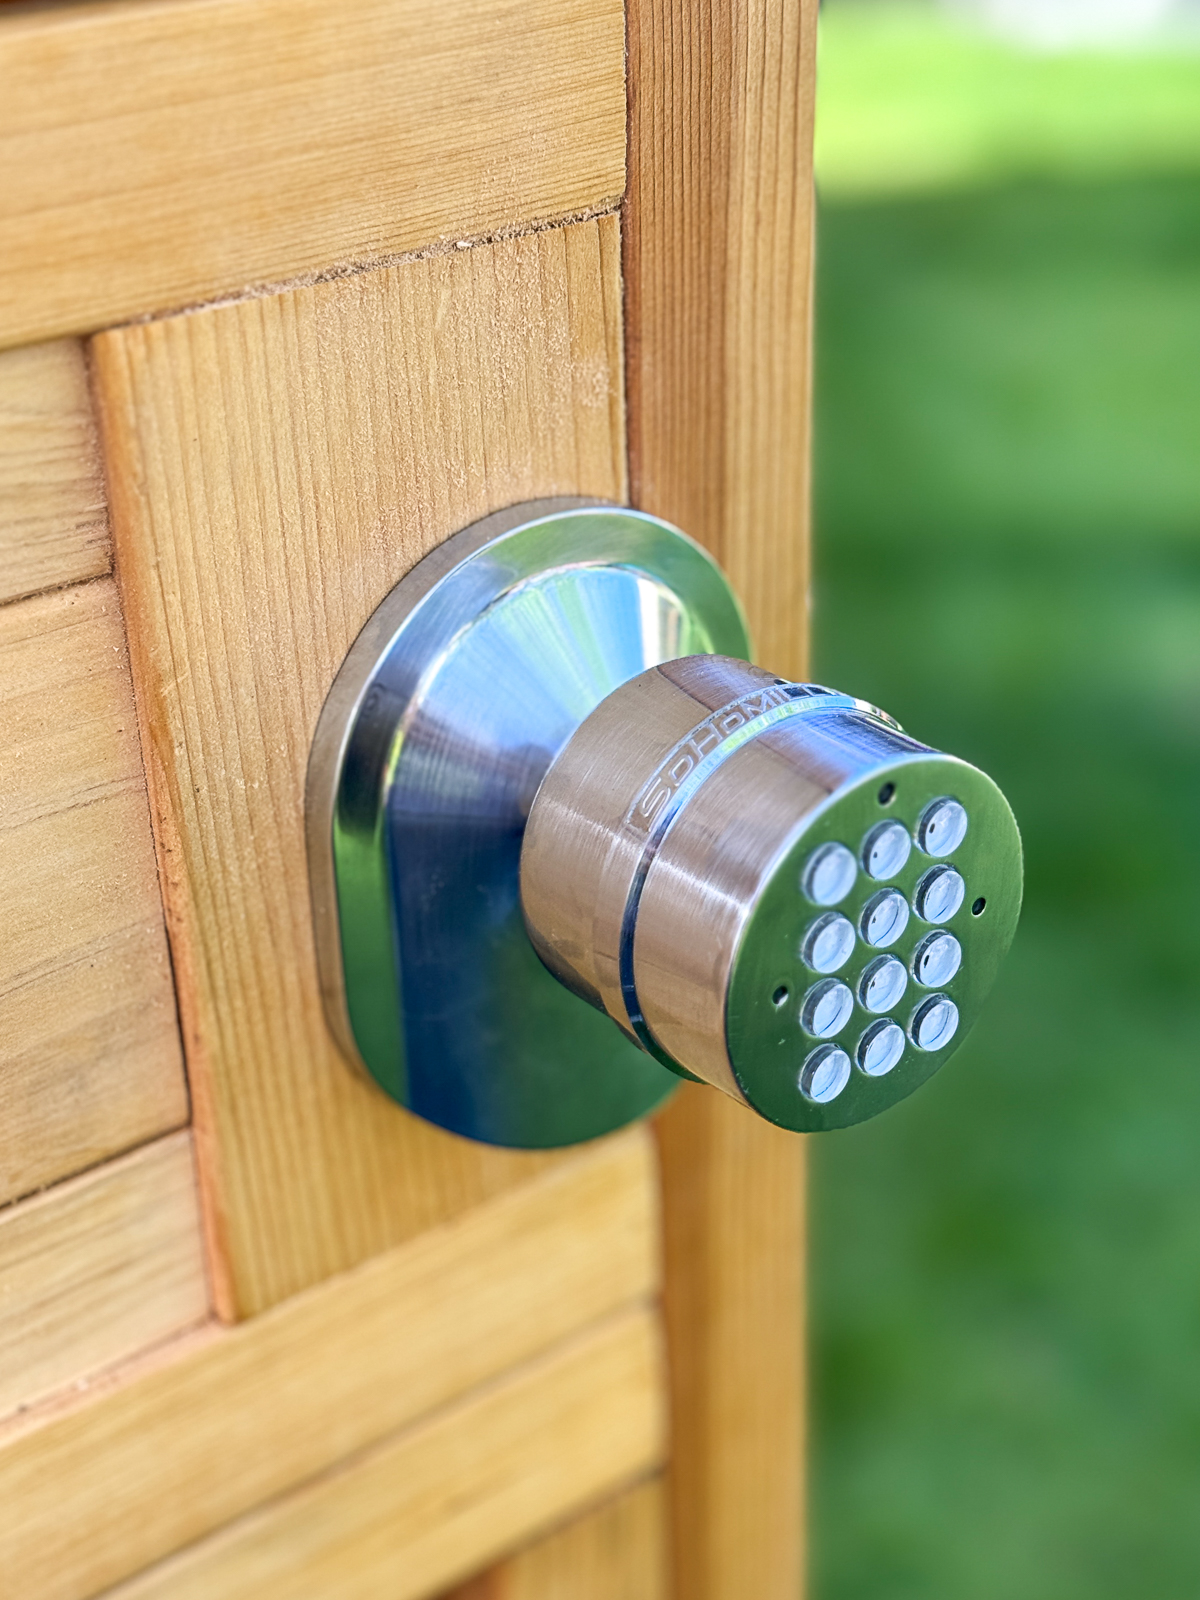 door knob with keypad installed on wooden door